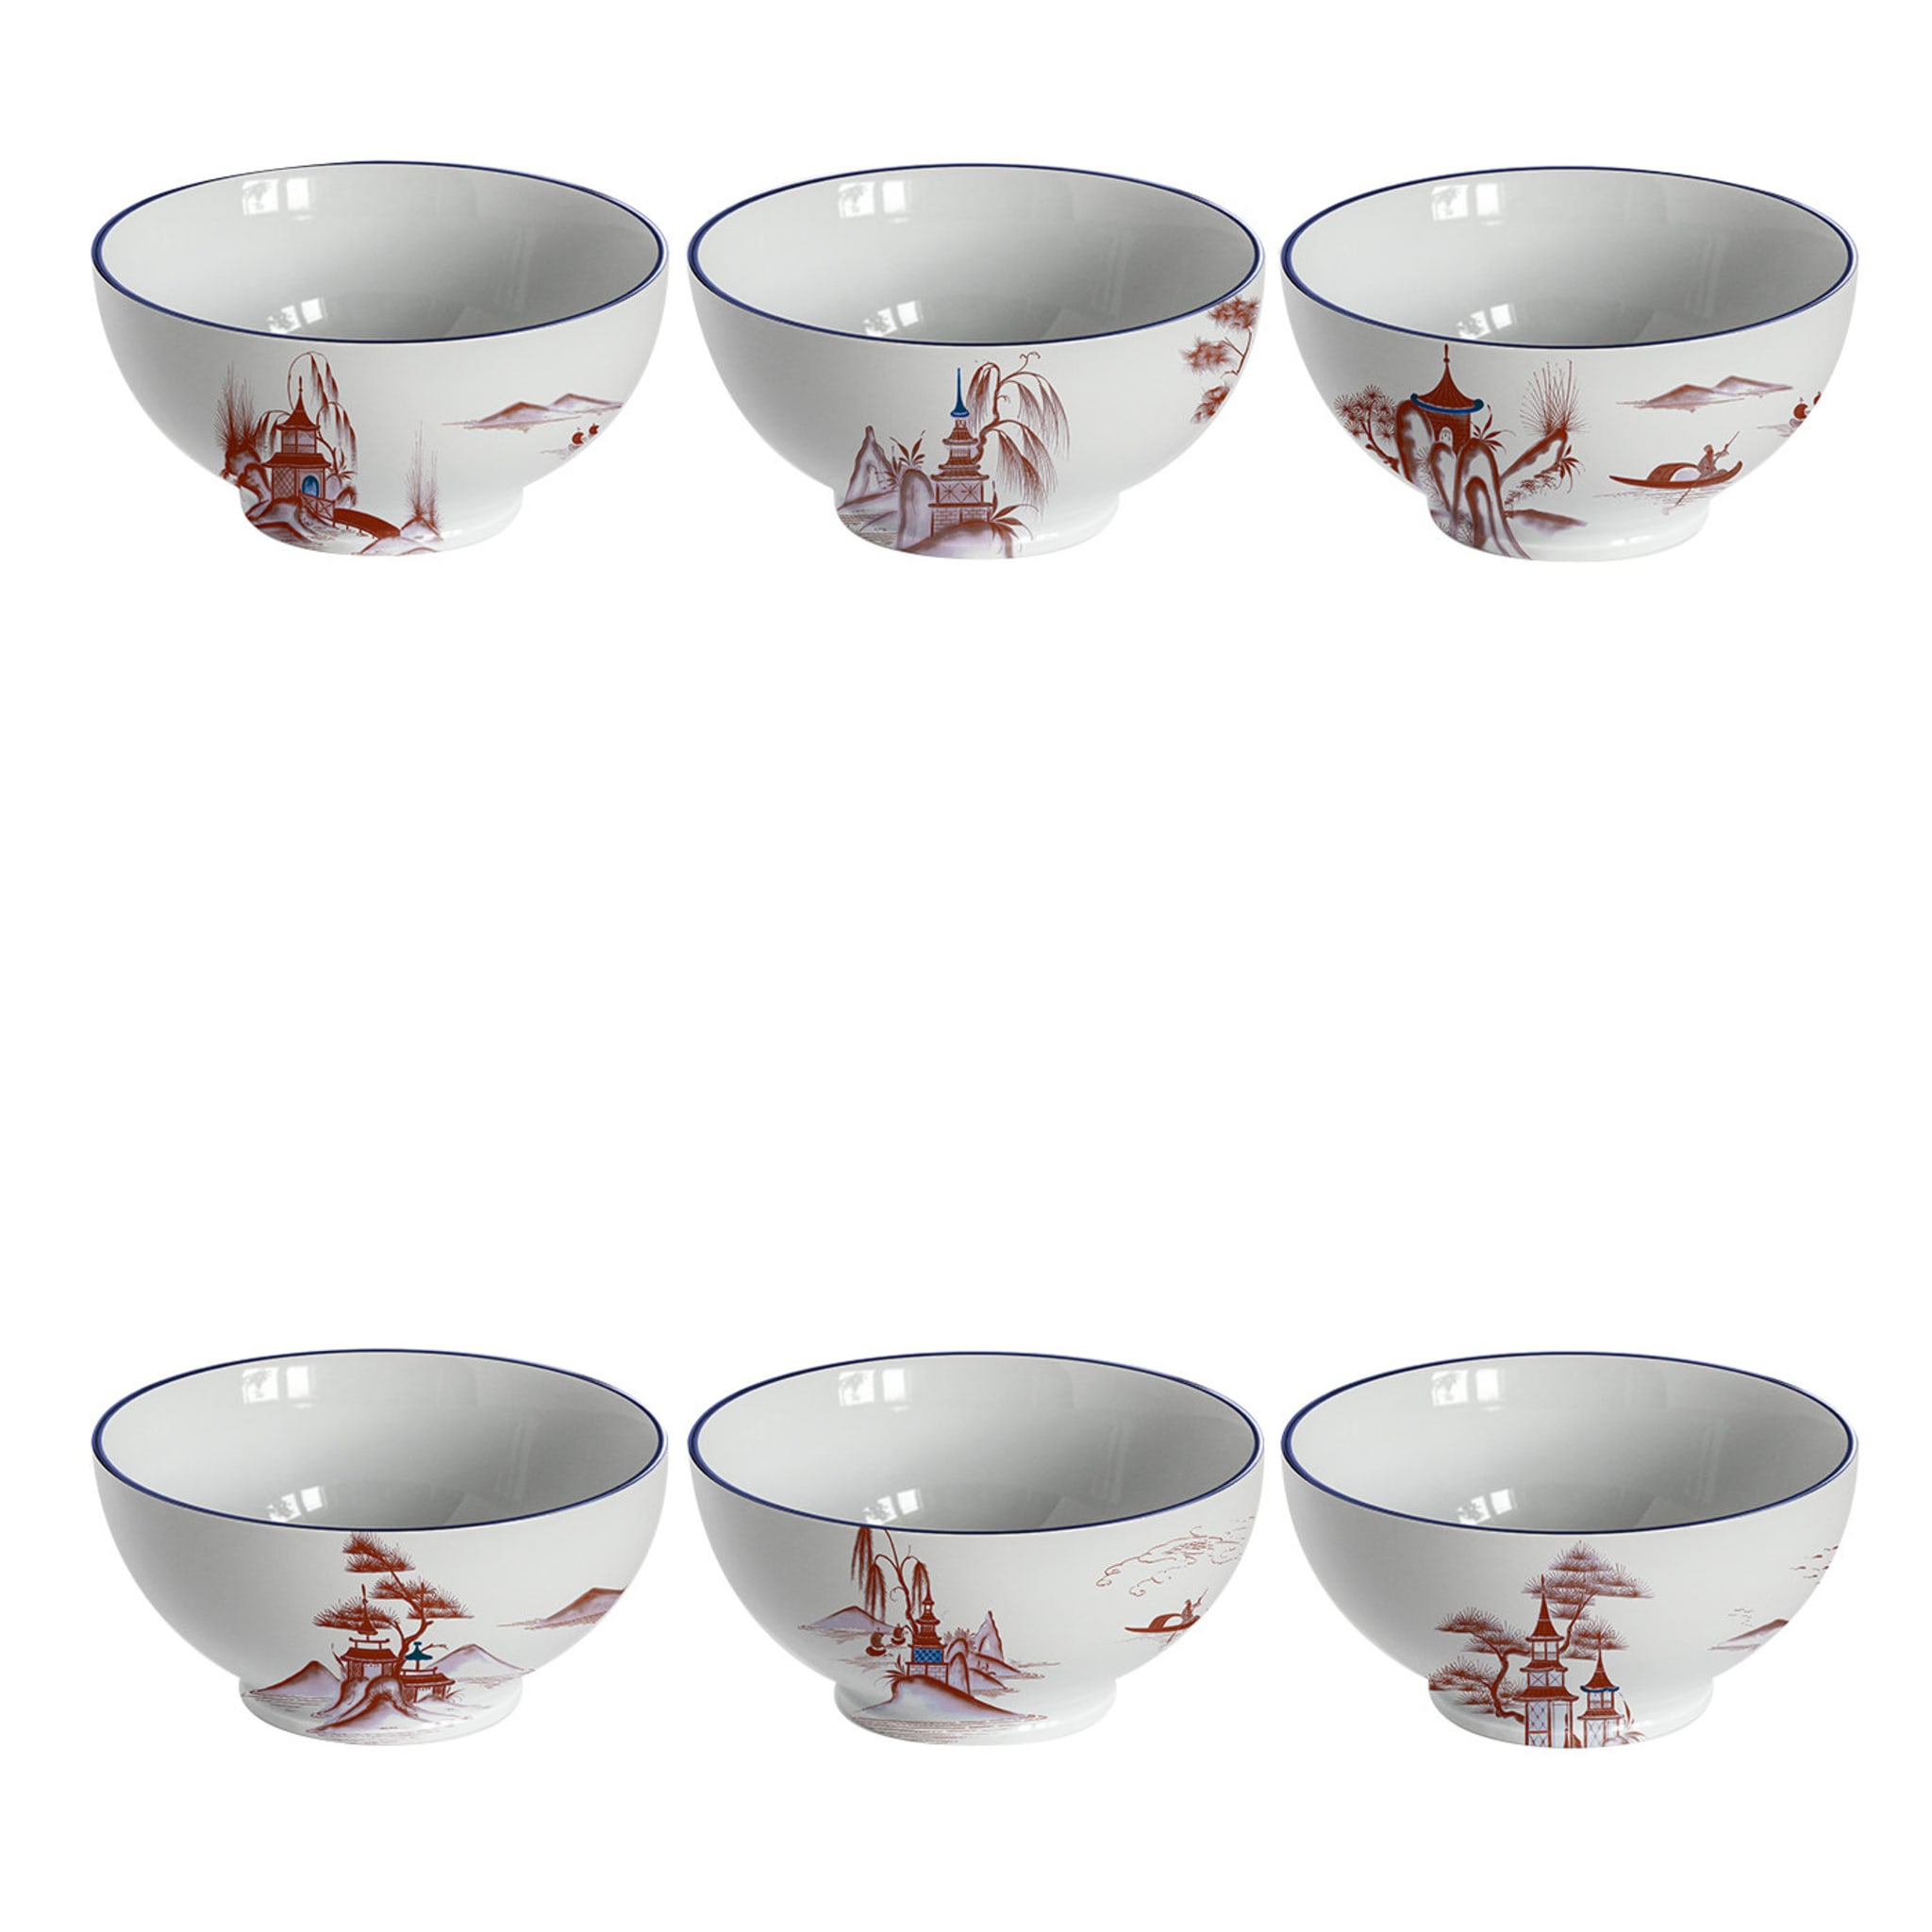 Natsumi Set of 6 Bowls - Main view